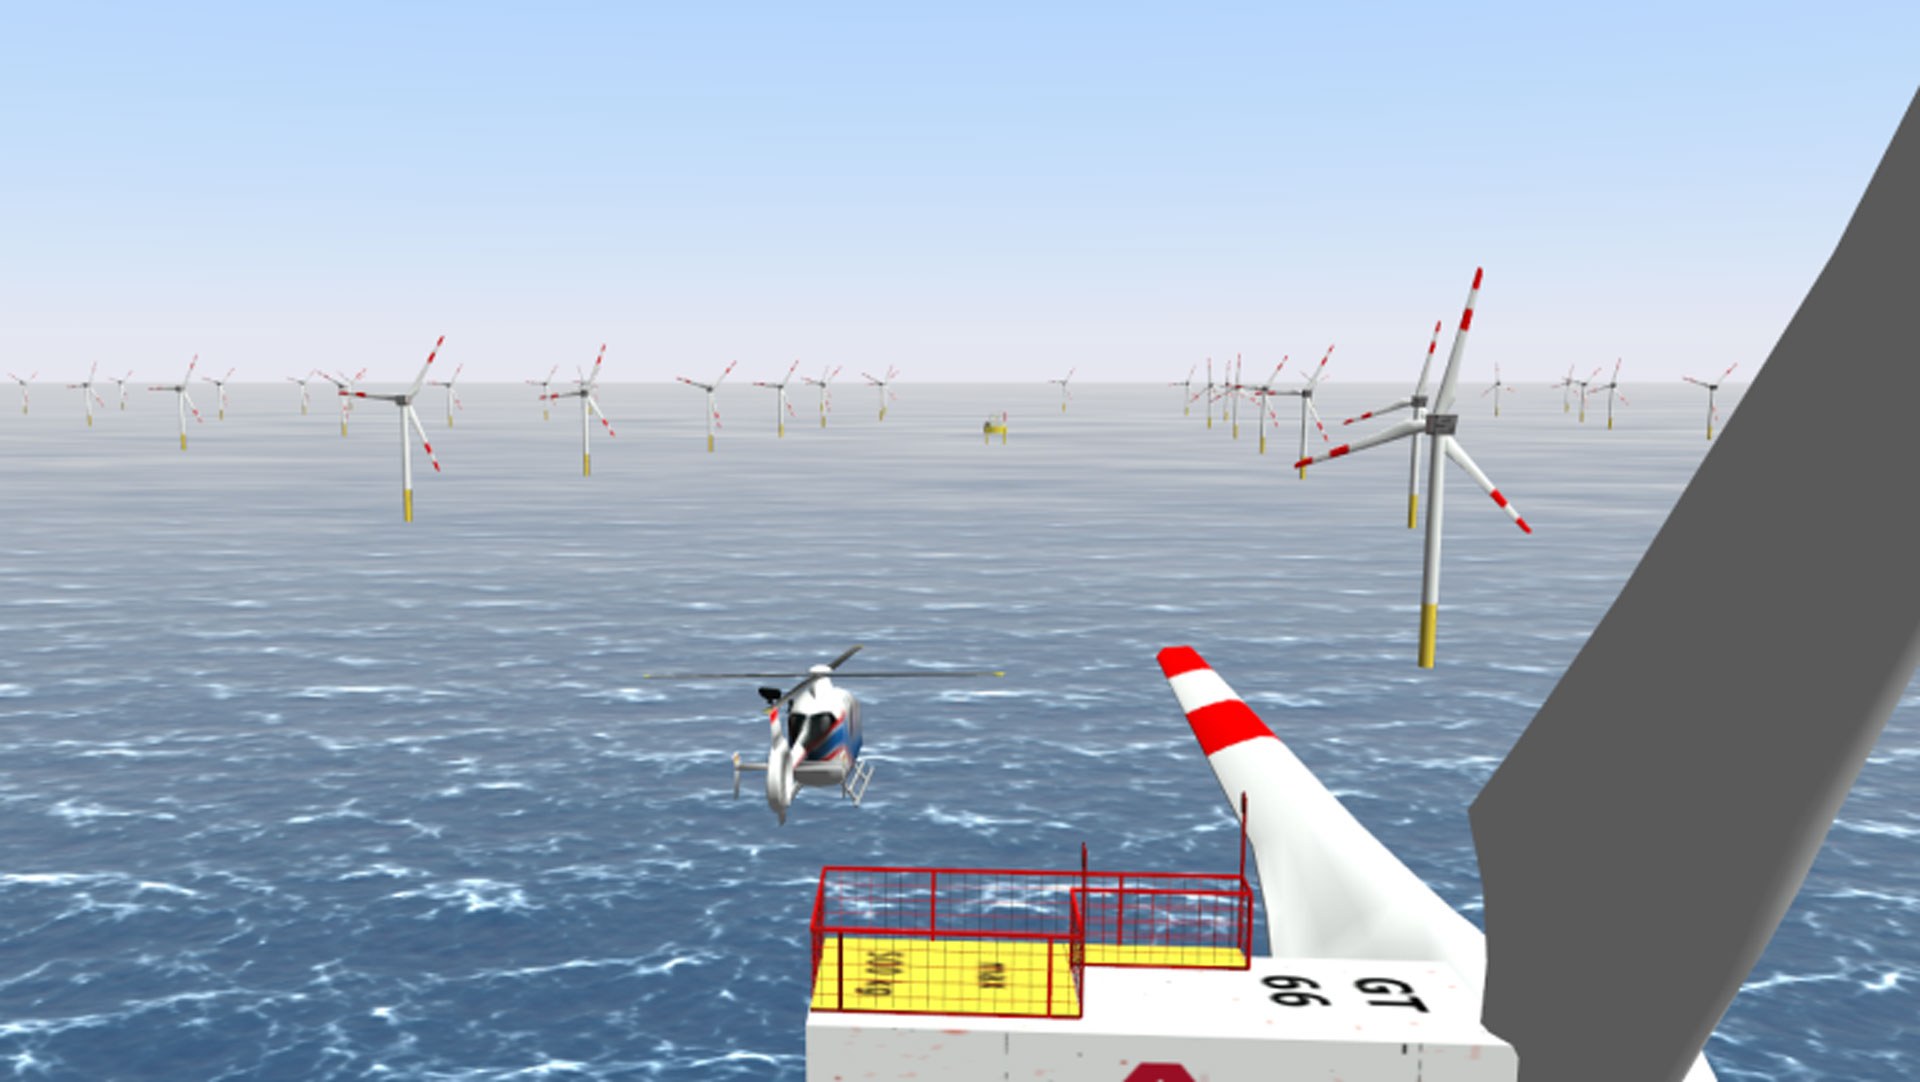 Vorstudie zum Einsatz von Hubschraubern im Offshore-Windpark (Simulation)